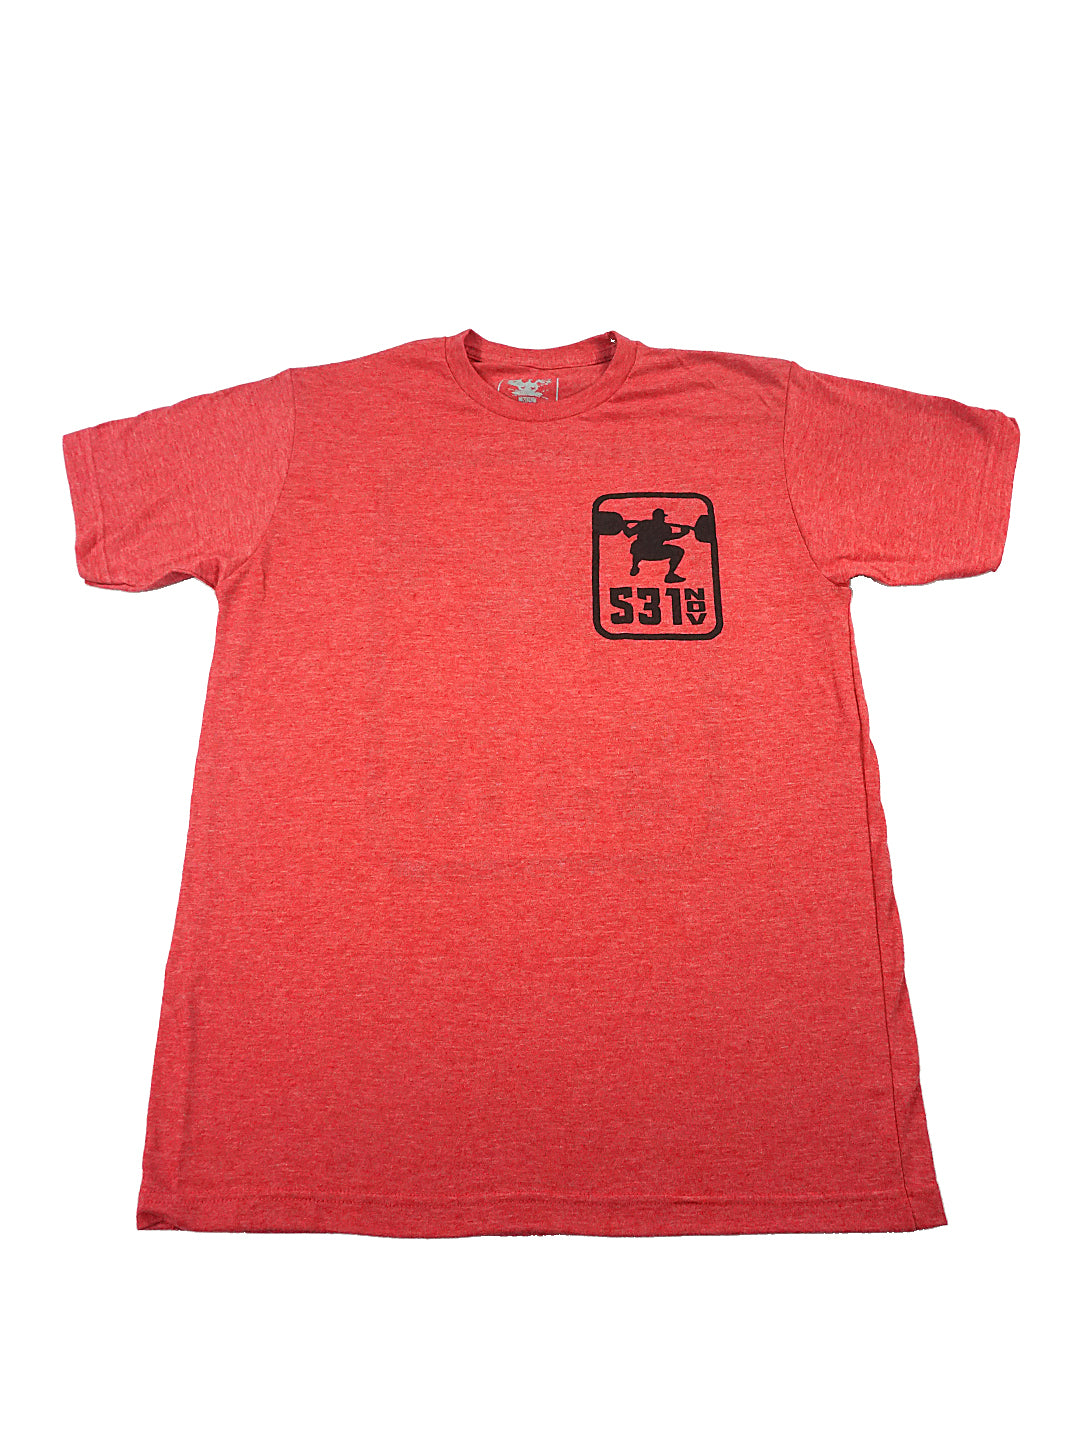 Squat Shirt - Red